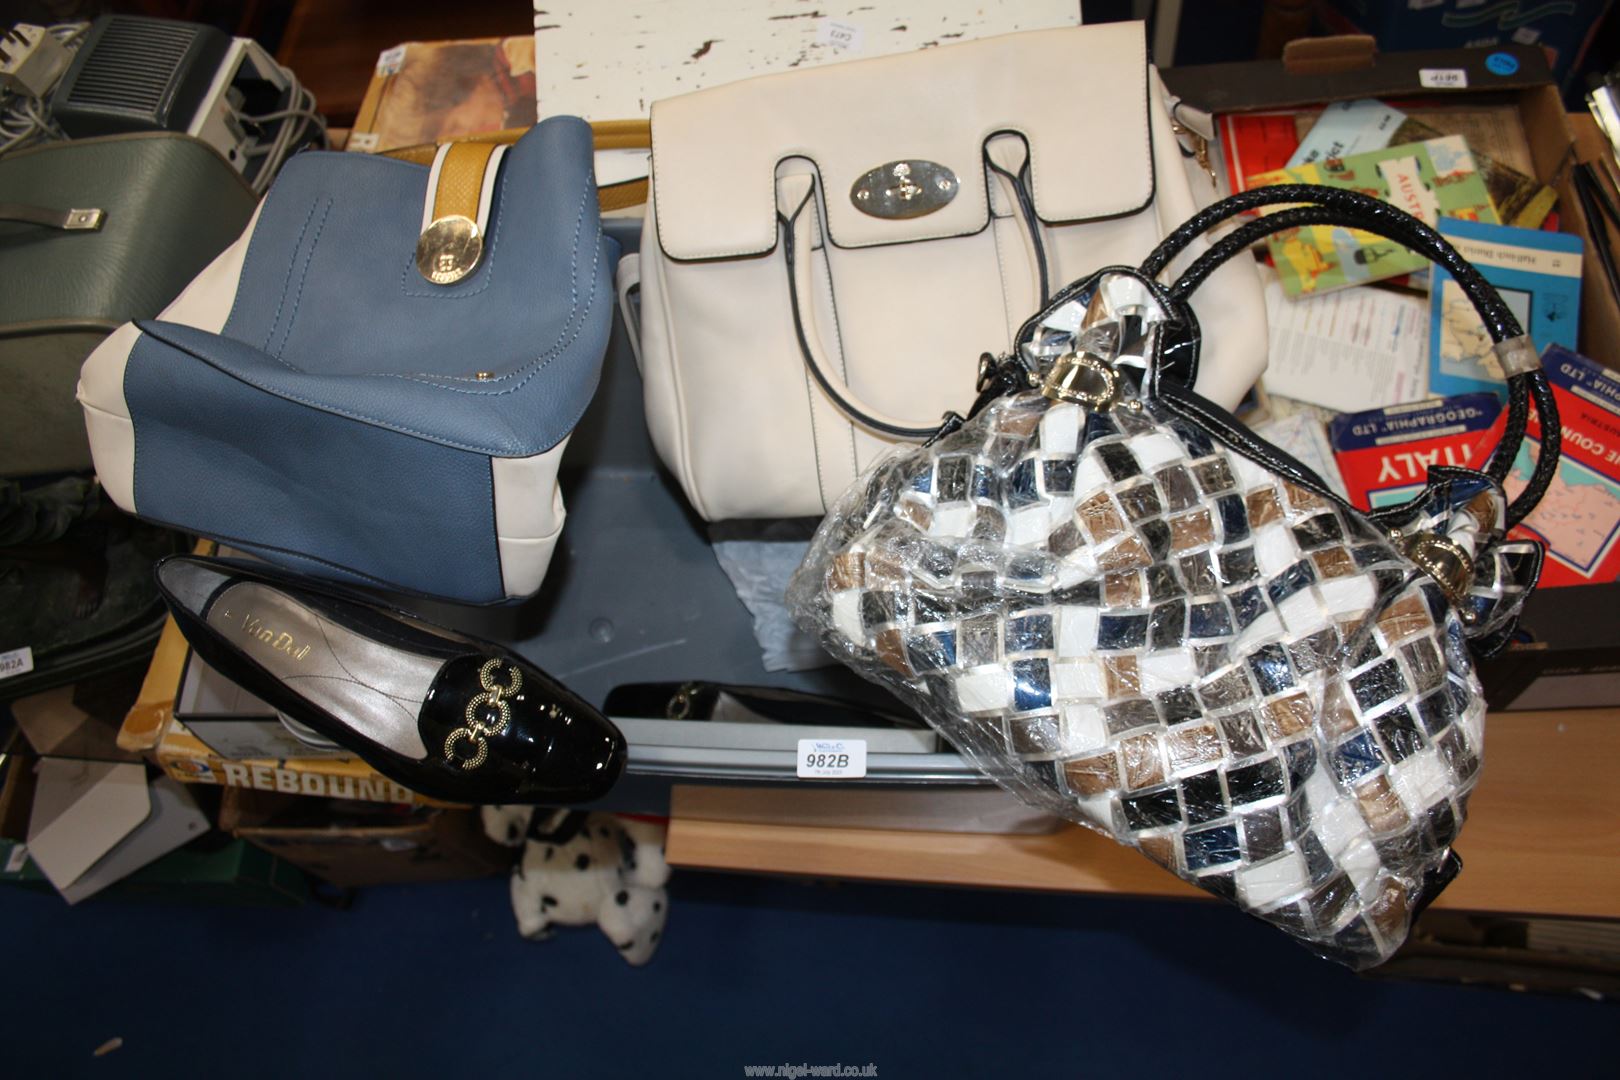 Three ladies handbags and pair of Van Daal size 7 shoes.